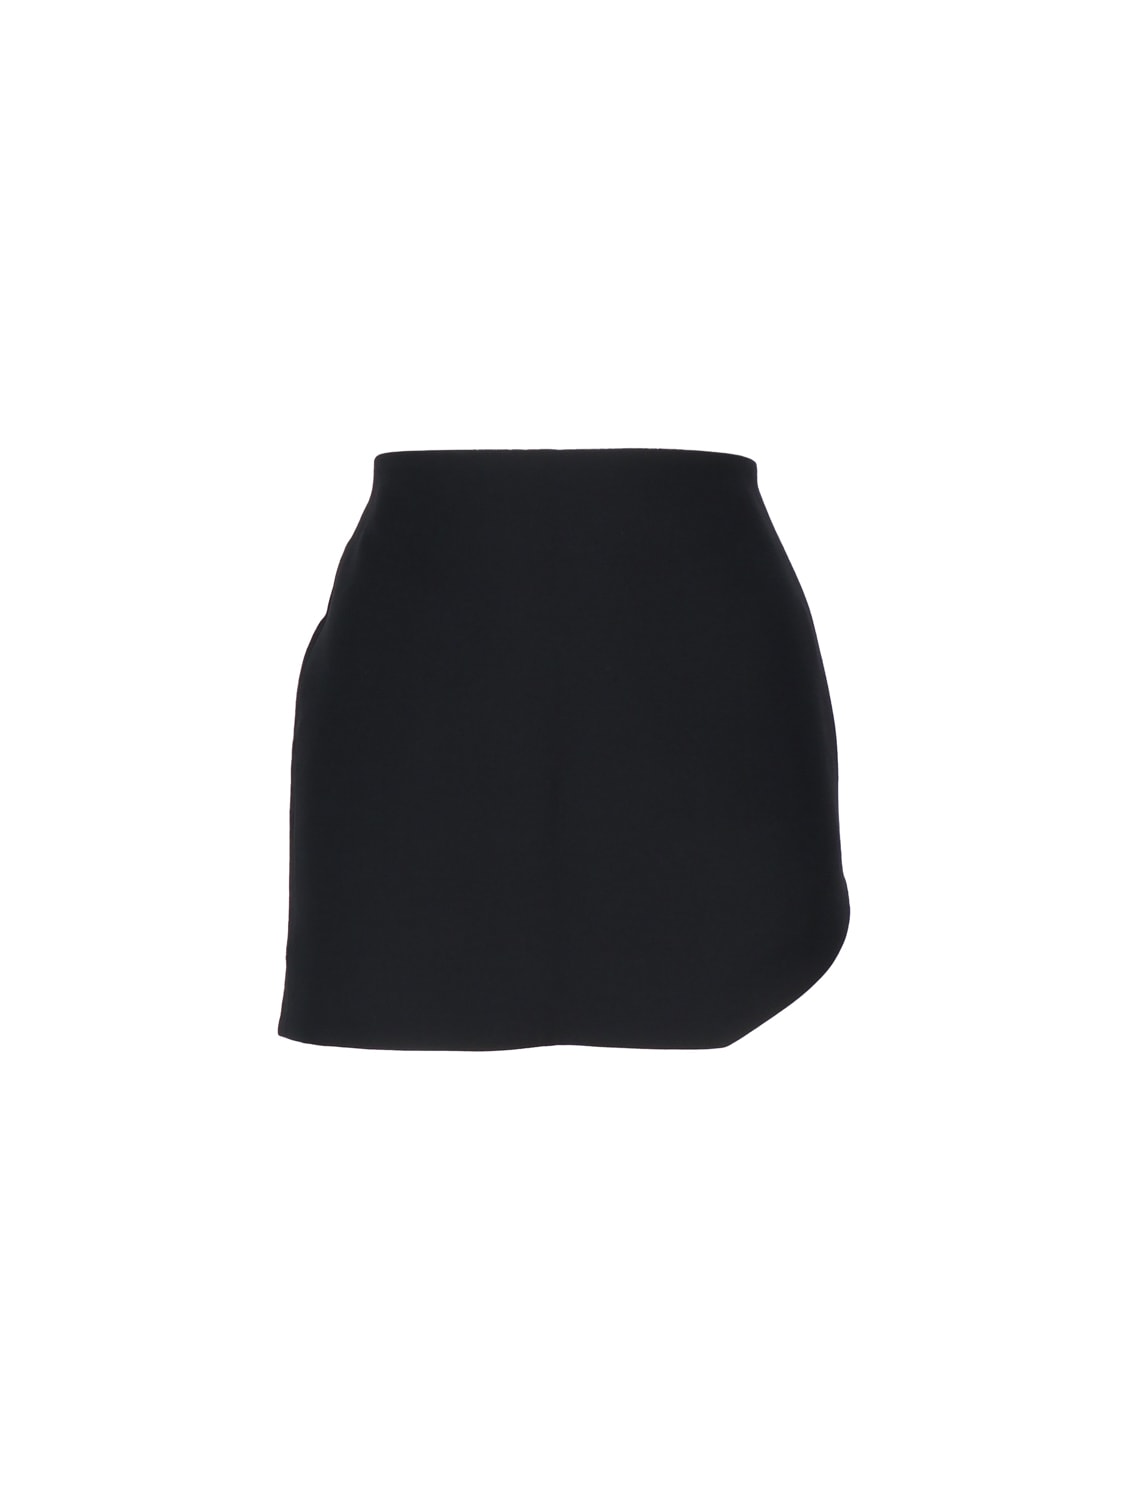 Amber Asymmetric Skirt